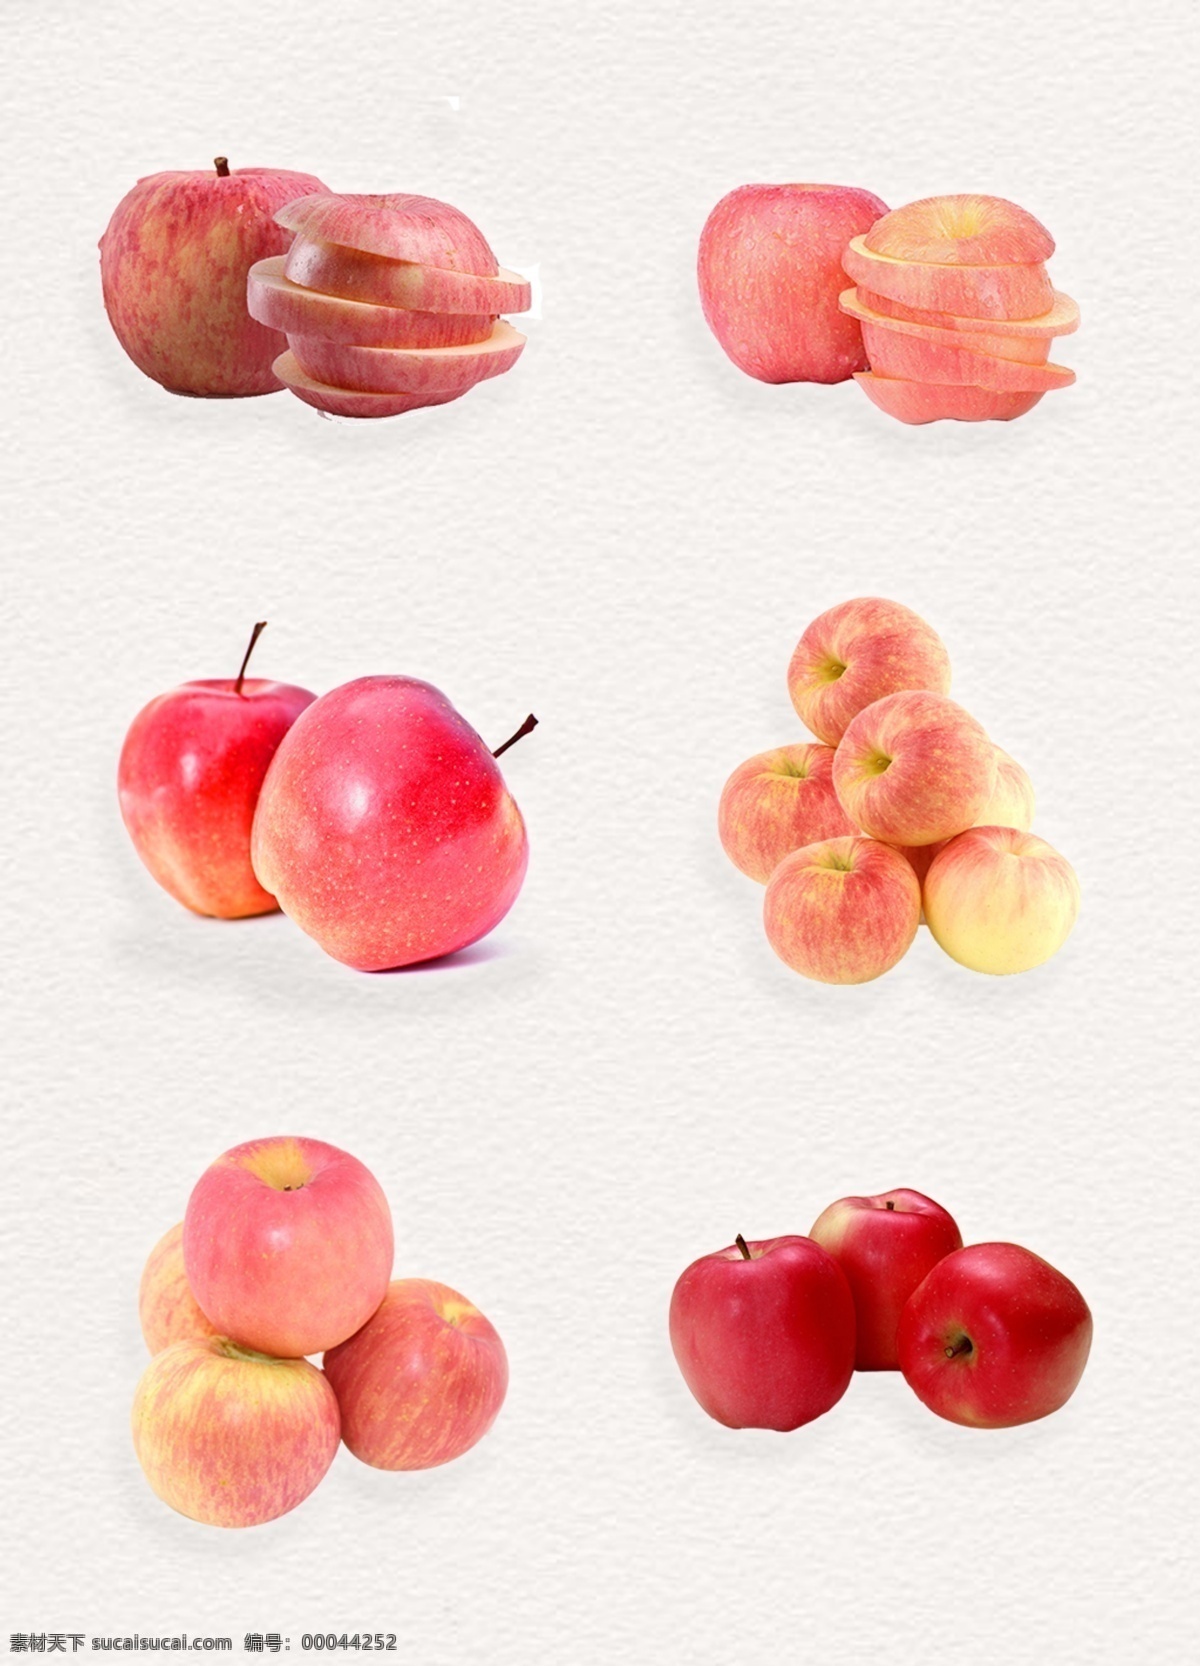 红色 新鲜 苹果 水果 实物 水果素材 红富士 红苹果 切开的苹果 新鲜苹果 产品实物